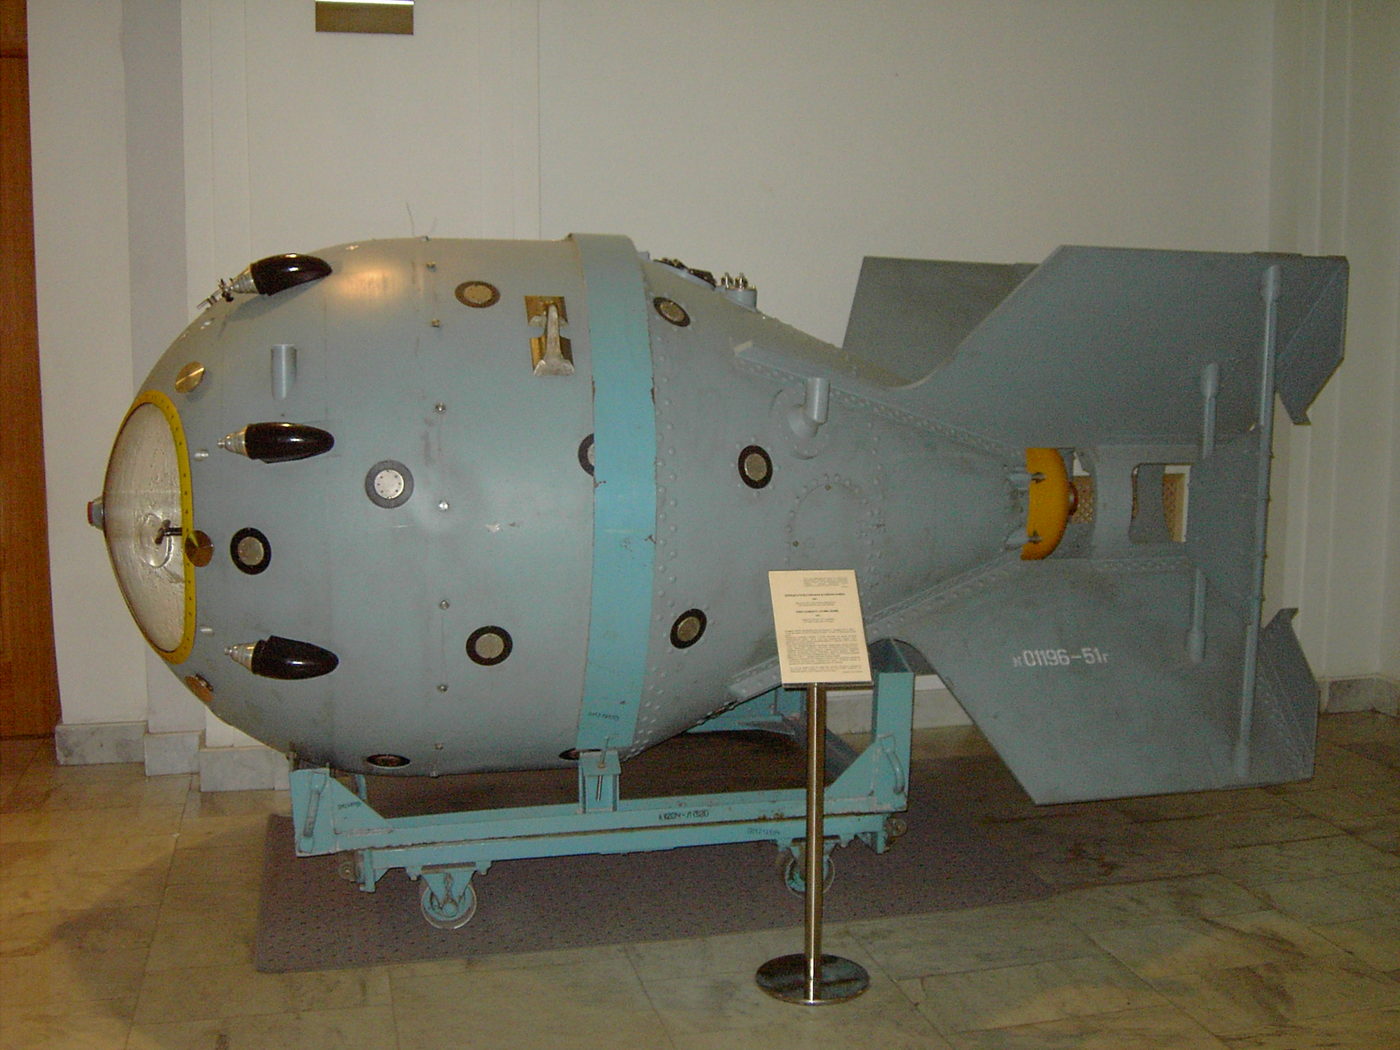 Ссср было создано атомное оружие. Атомная бомба РДС-1. Первая Советская атомная бомба РДС-1. Советская атомная бомба Курчатов. Ядерная бомба РДС-4.